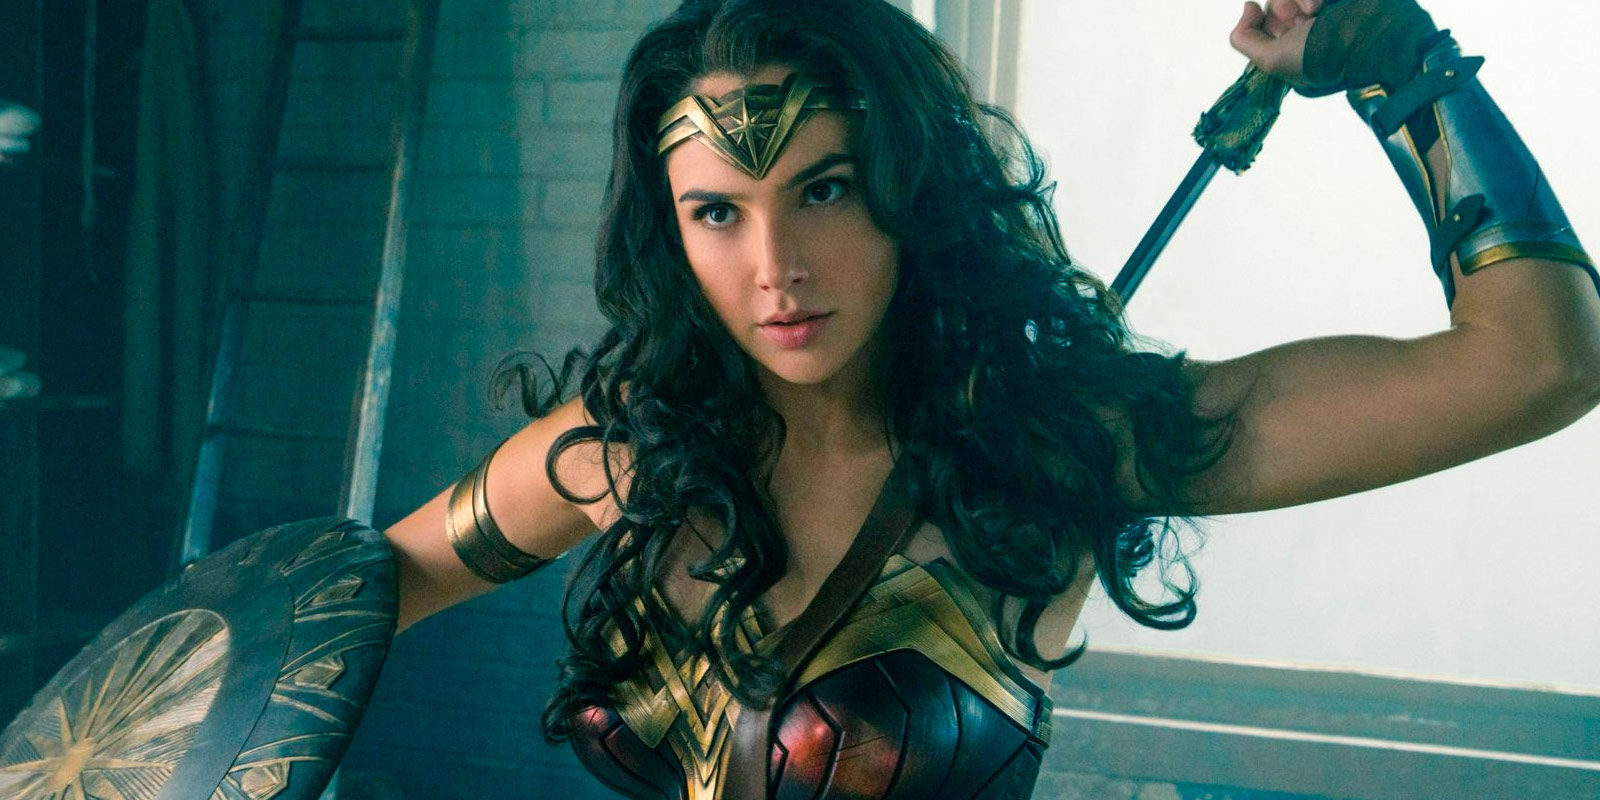 Warner lanza el tráiler final de 'Wonder Woman' repletito de acción